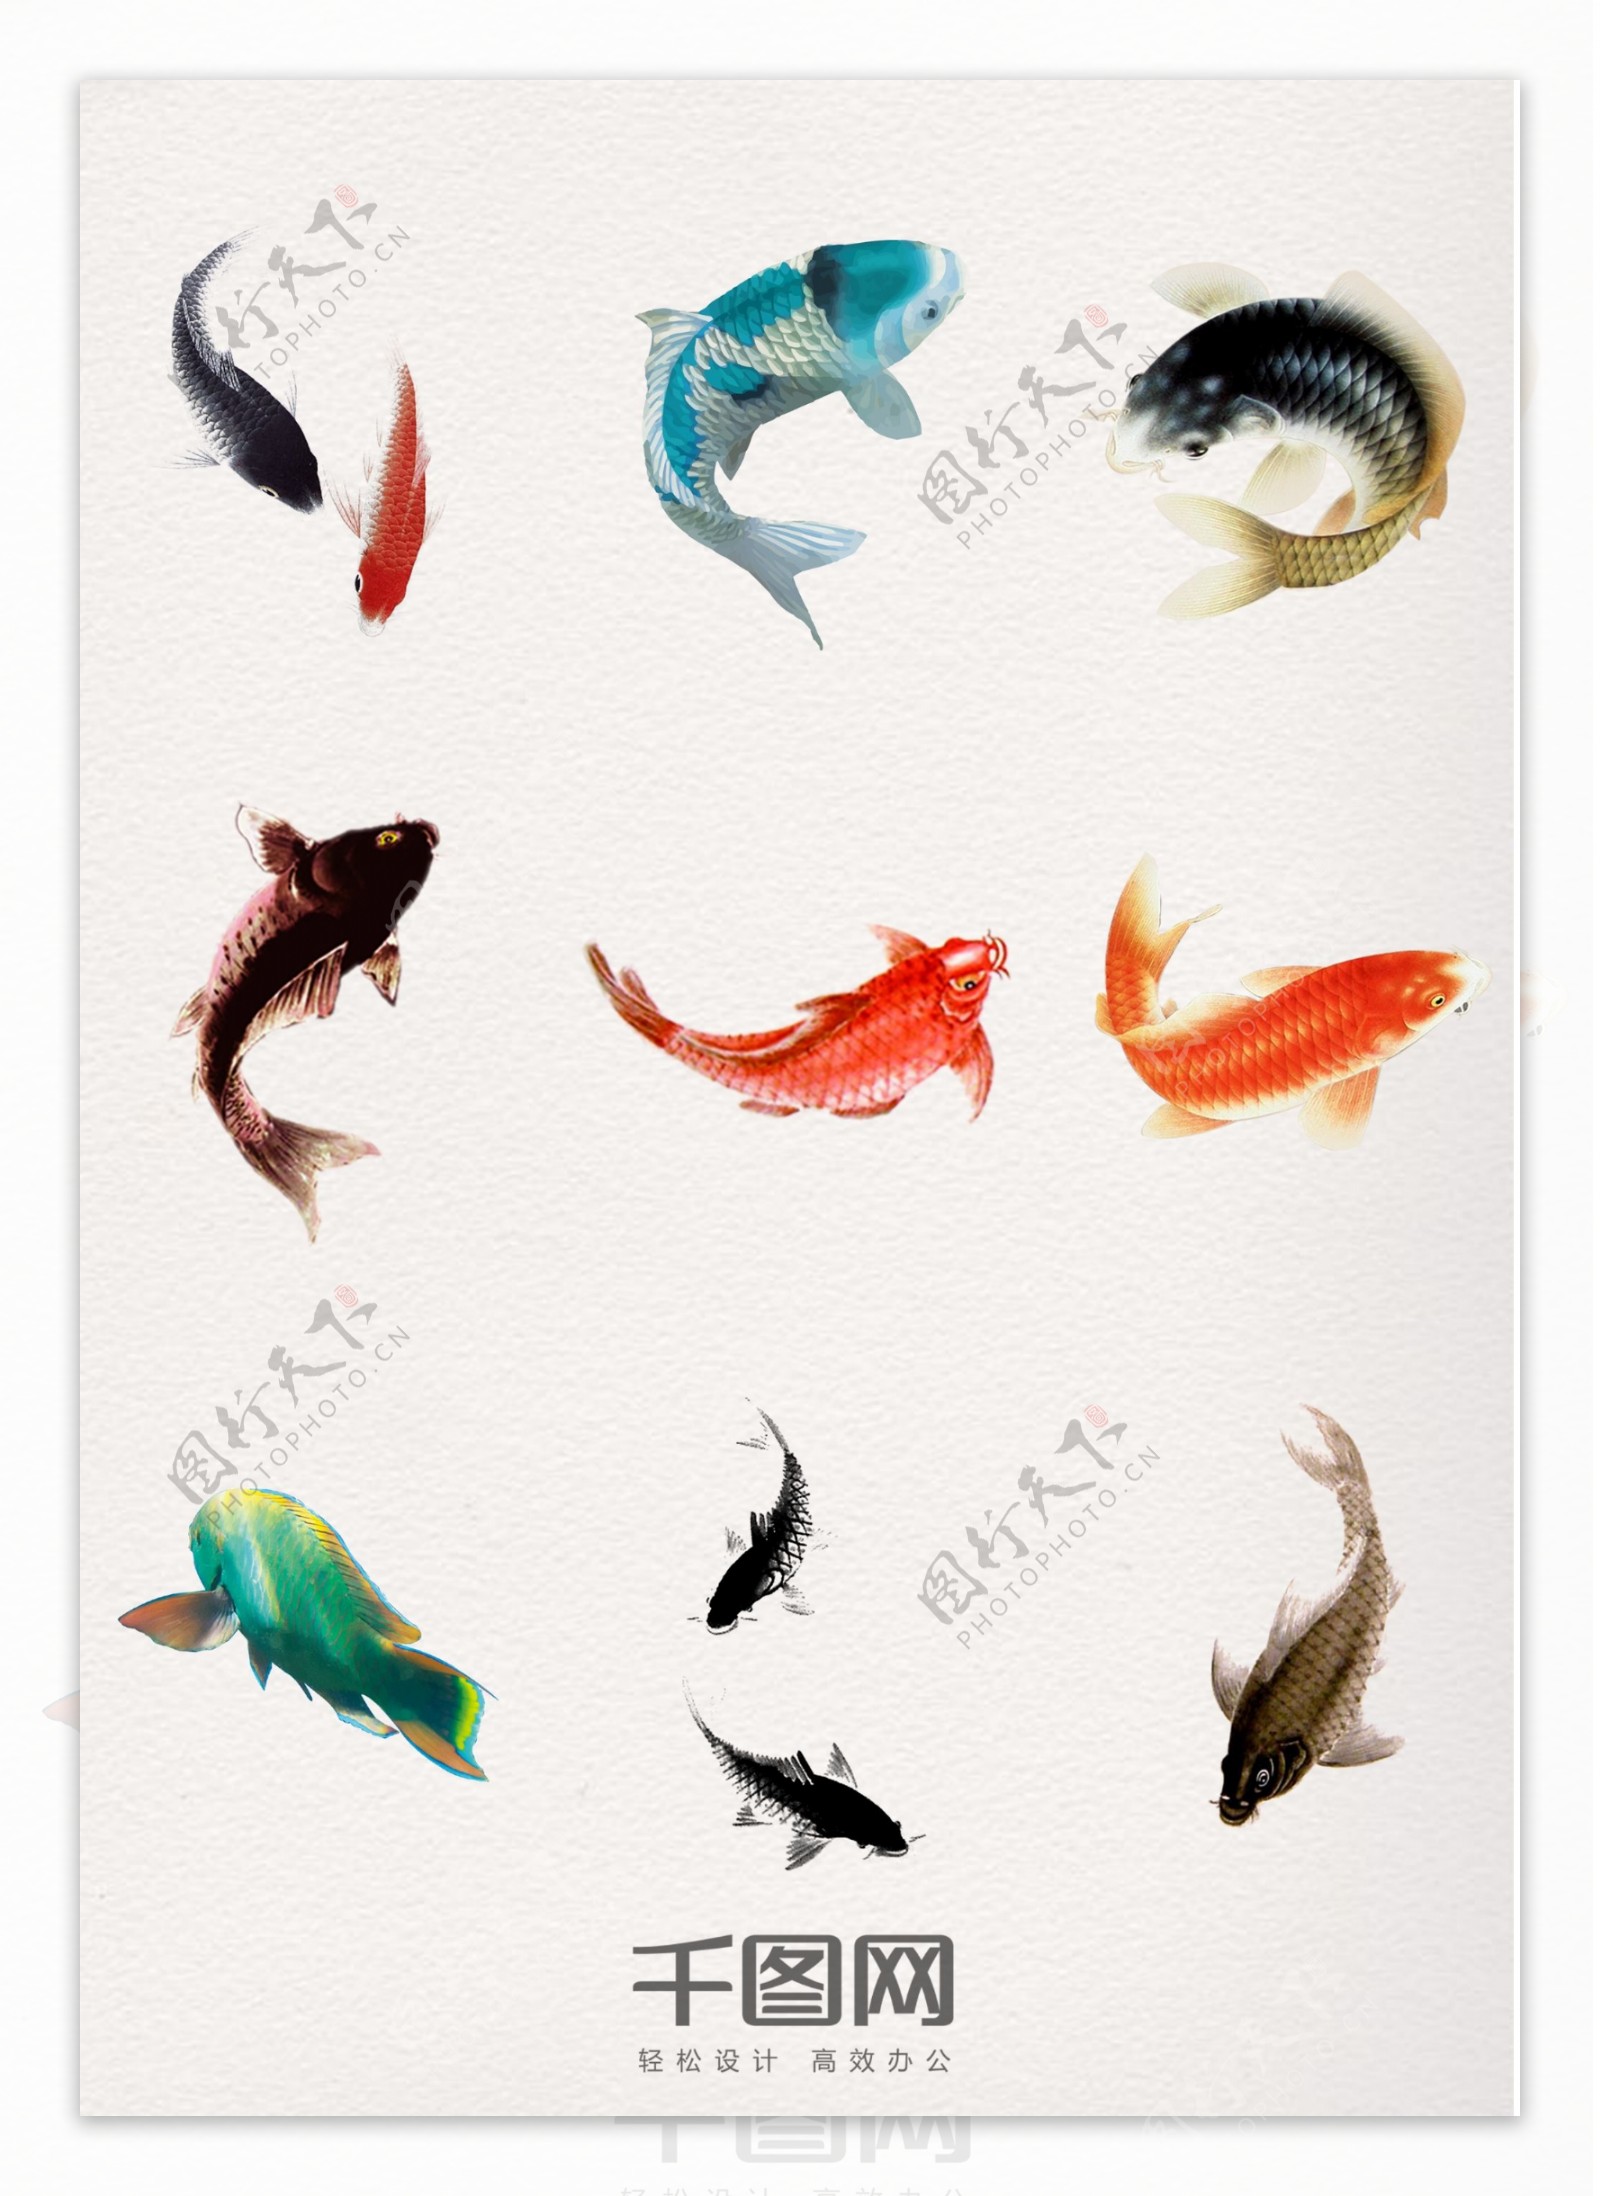 漂亮多彩手绘水墨中国风鲤鱼